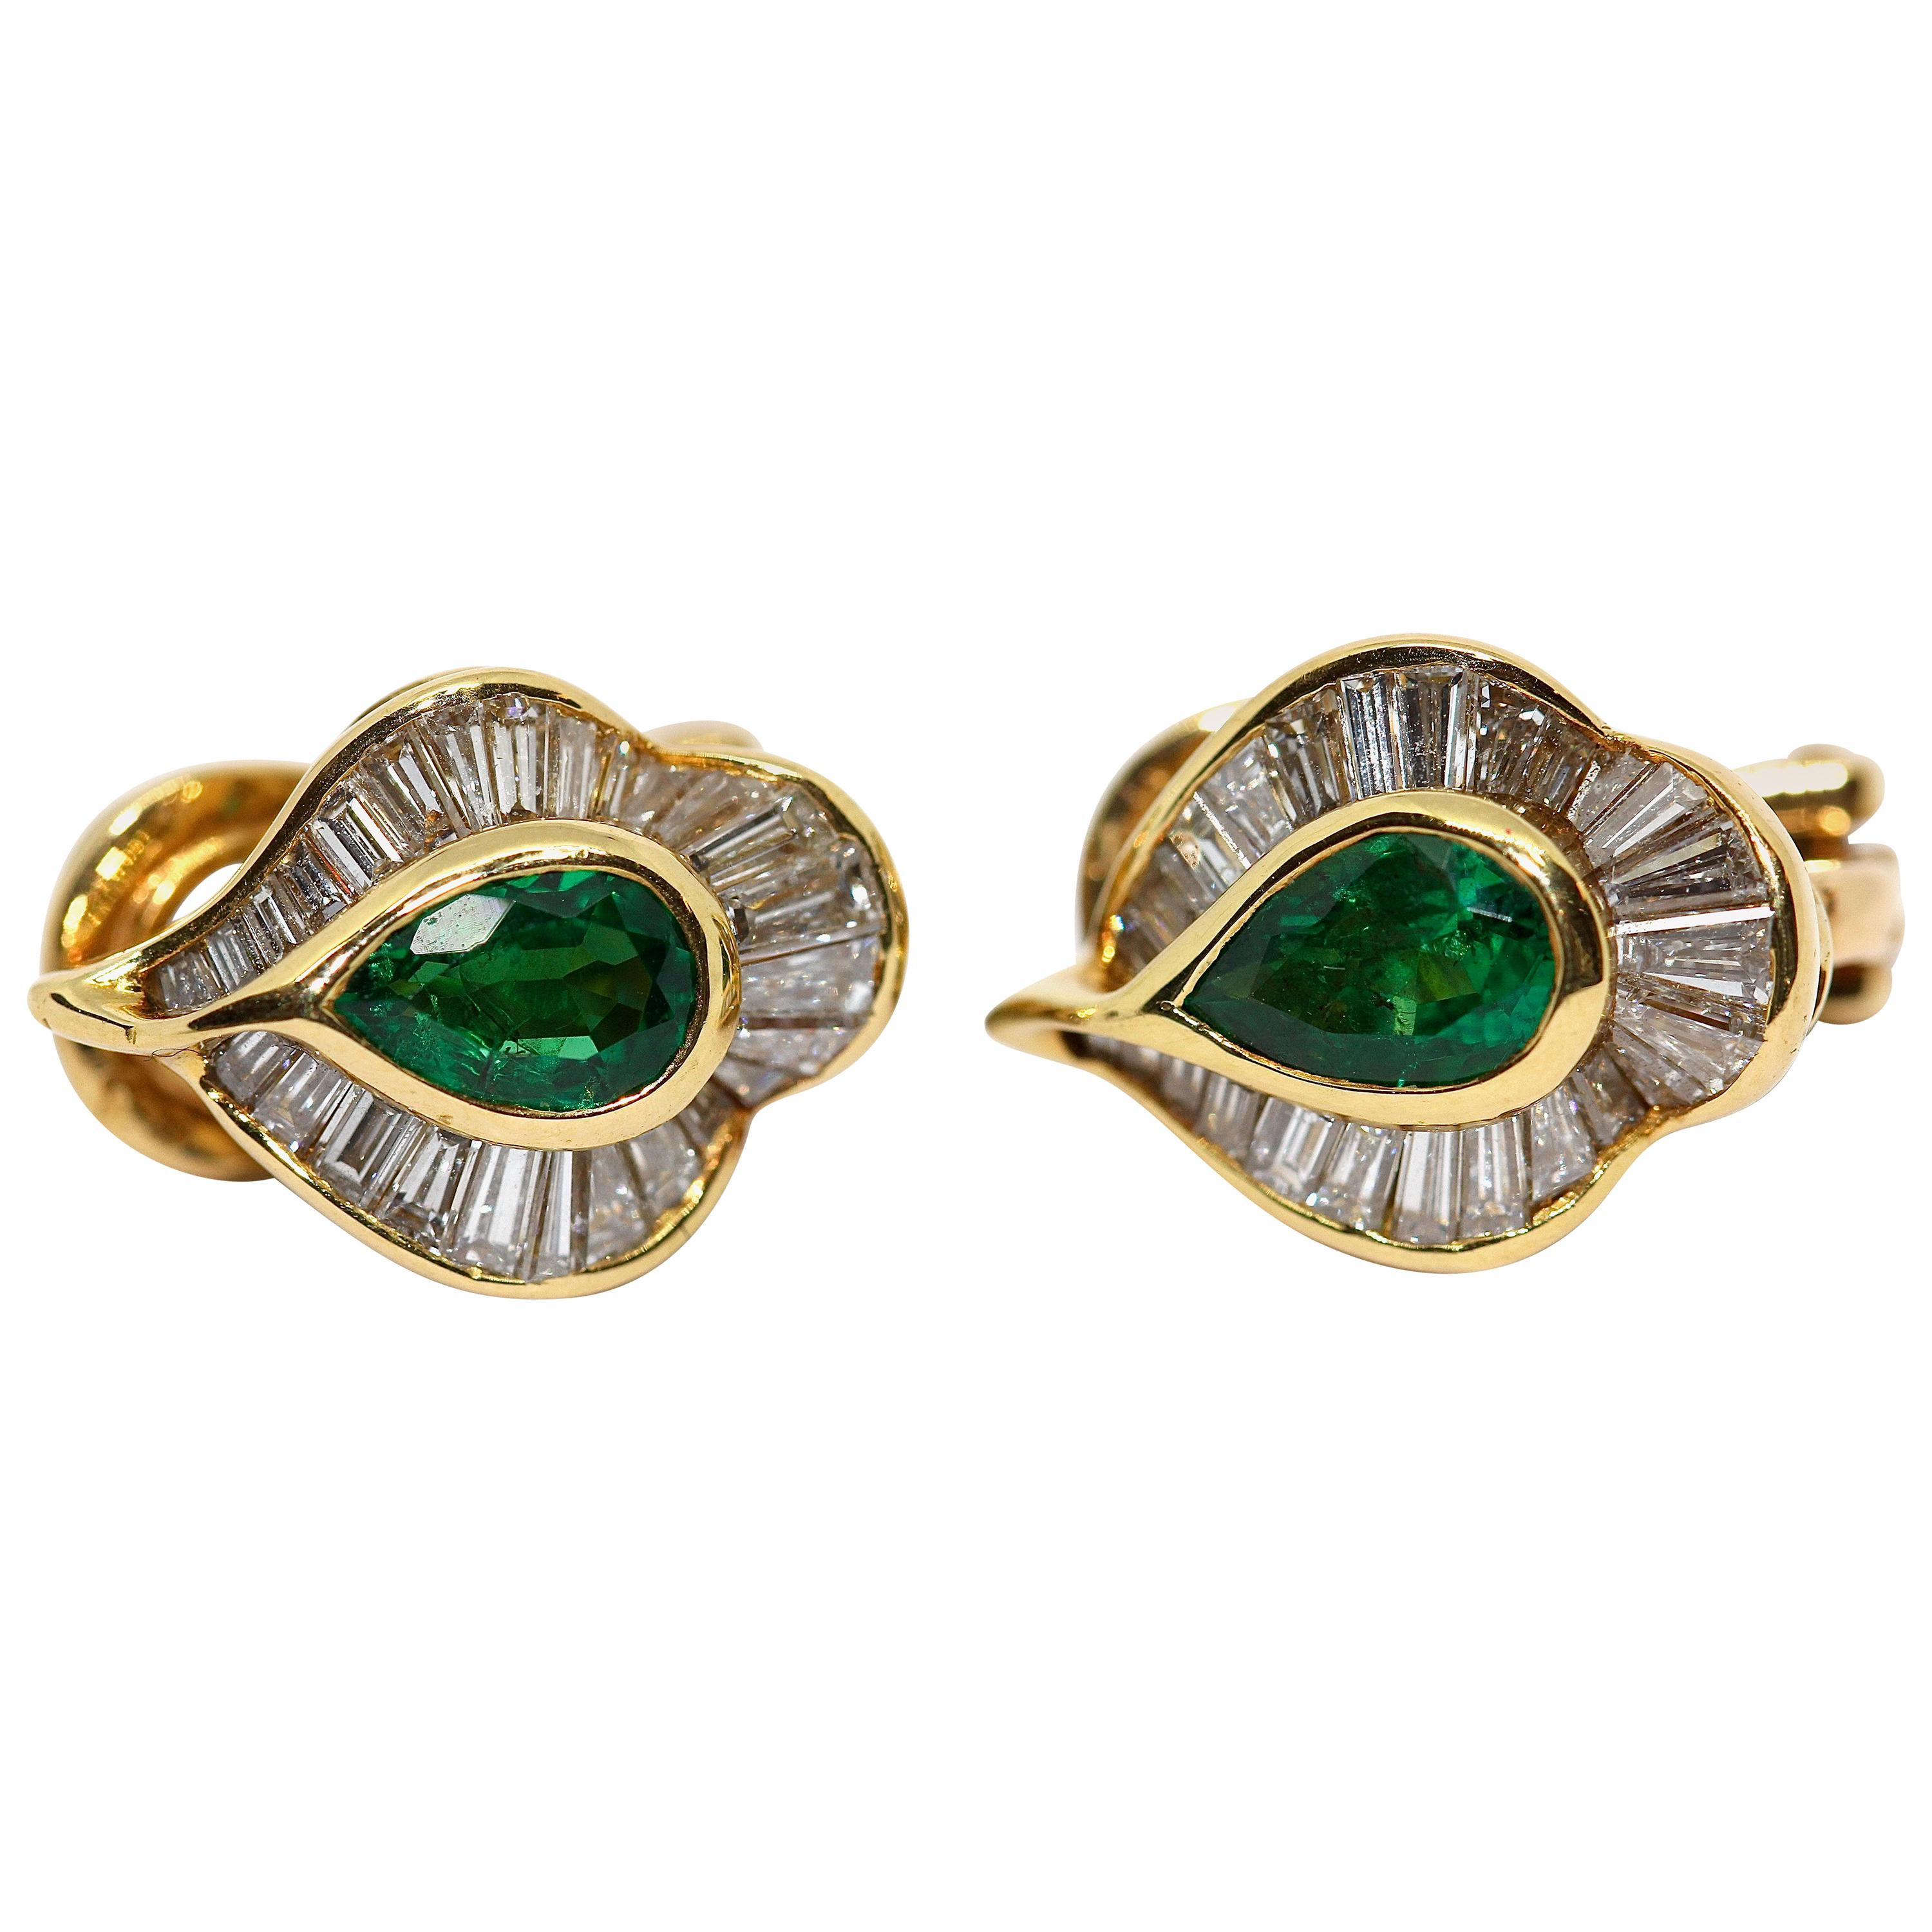 Emerald Stud Earrings with 55 Diamonds, by Hans Stern, 18 Karat Gold